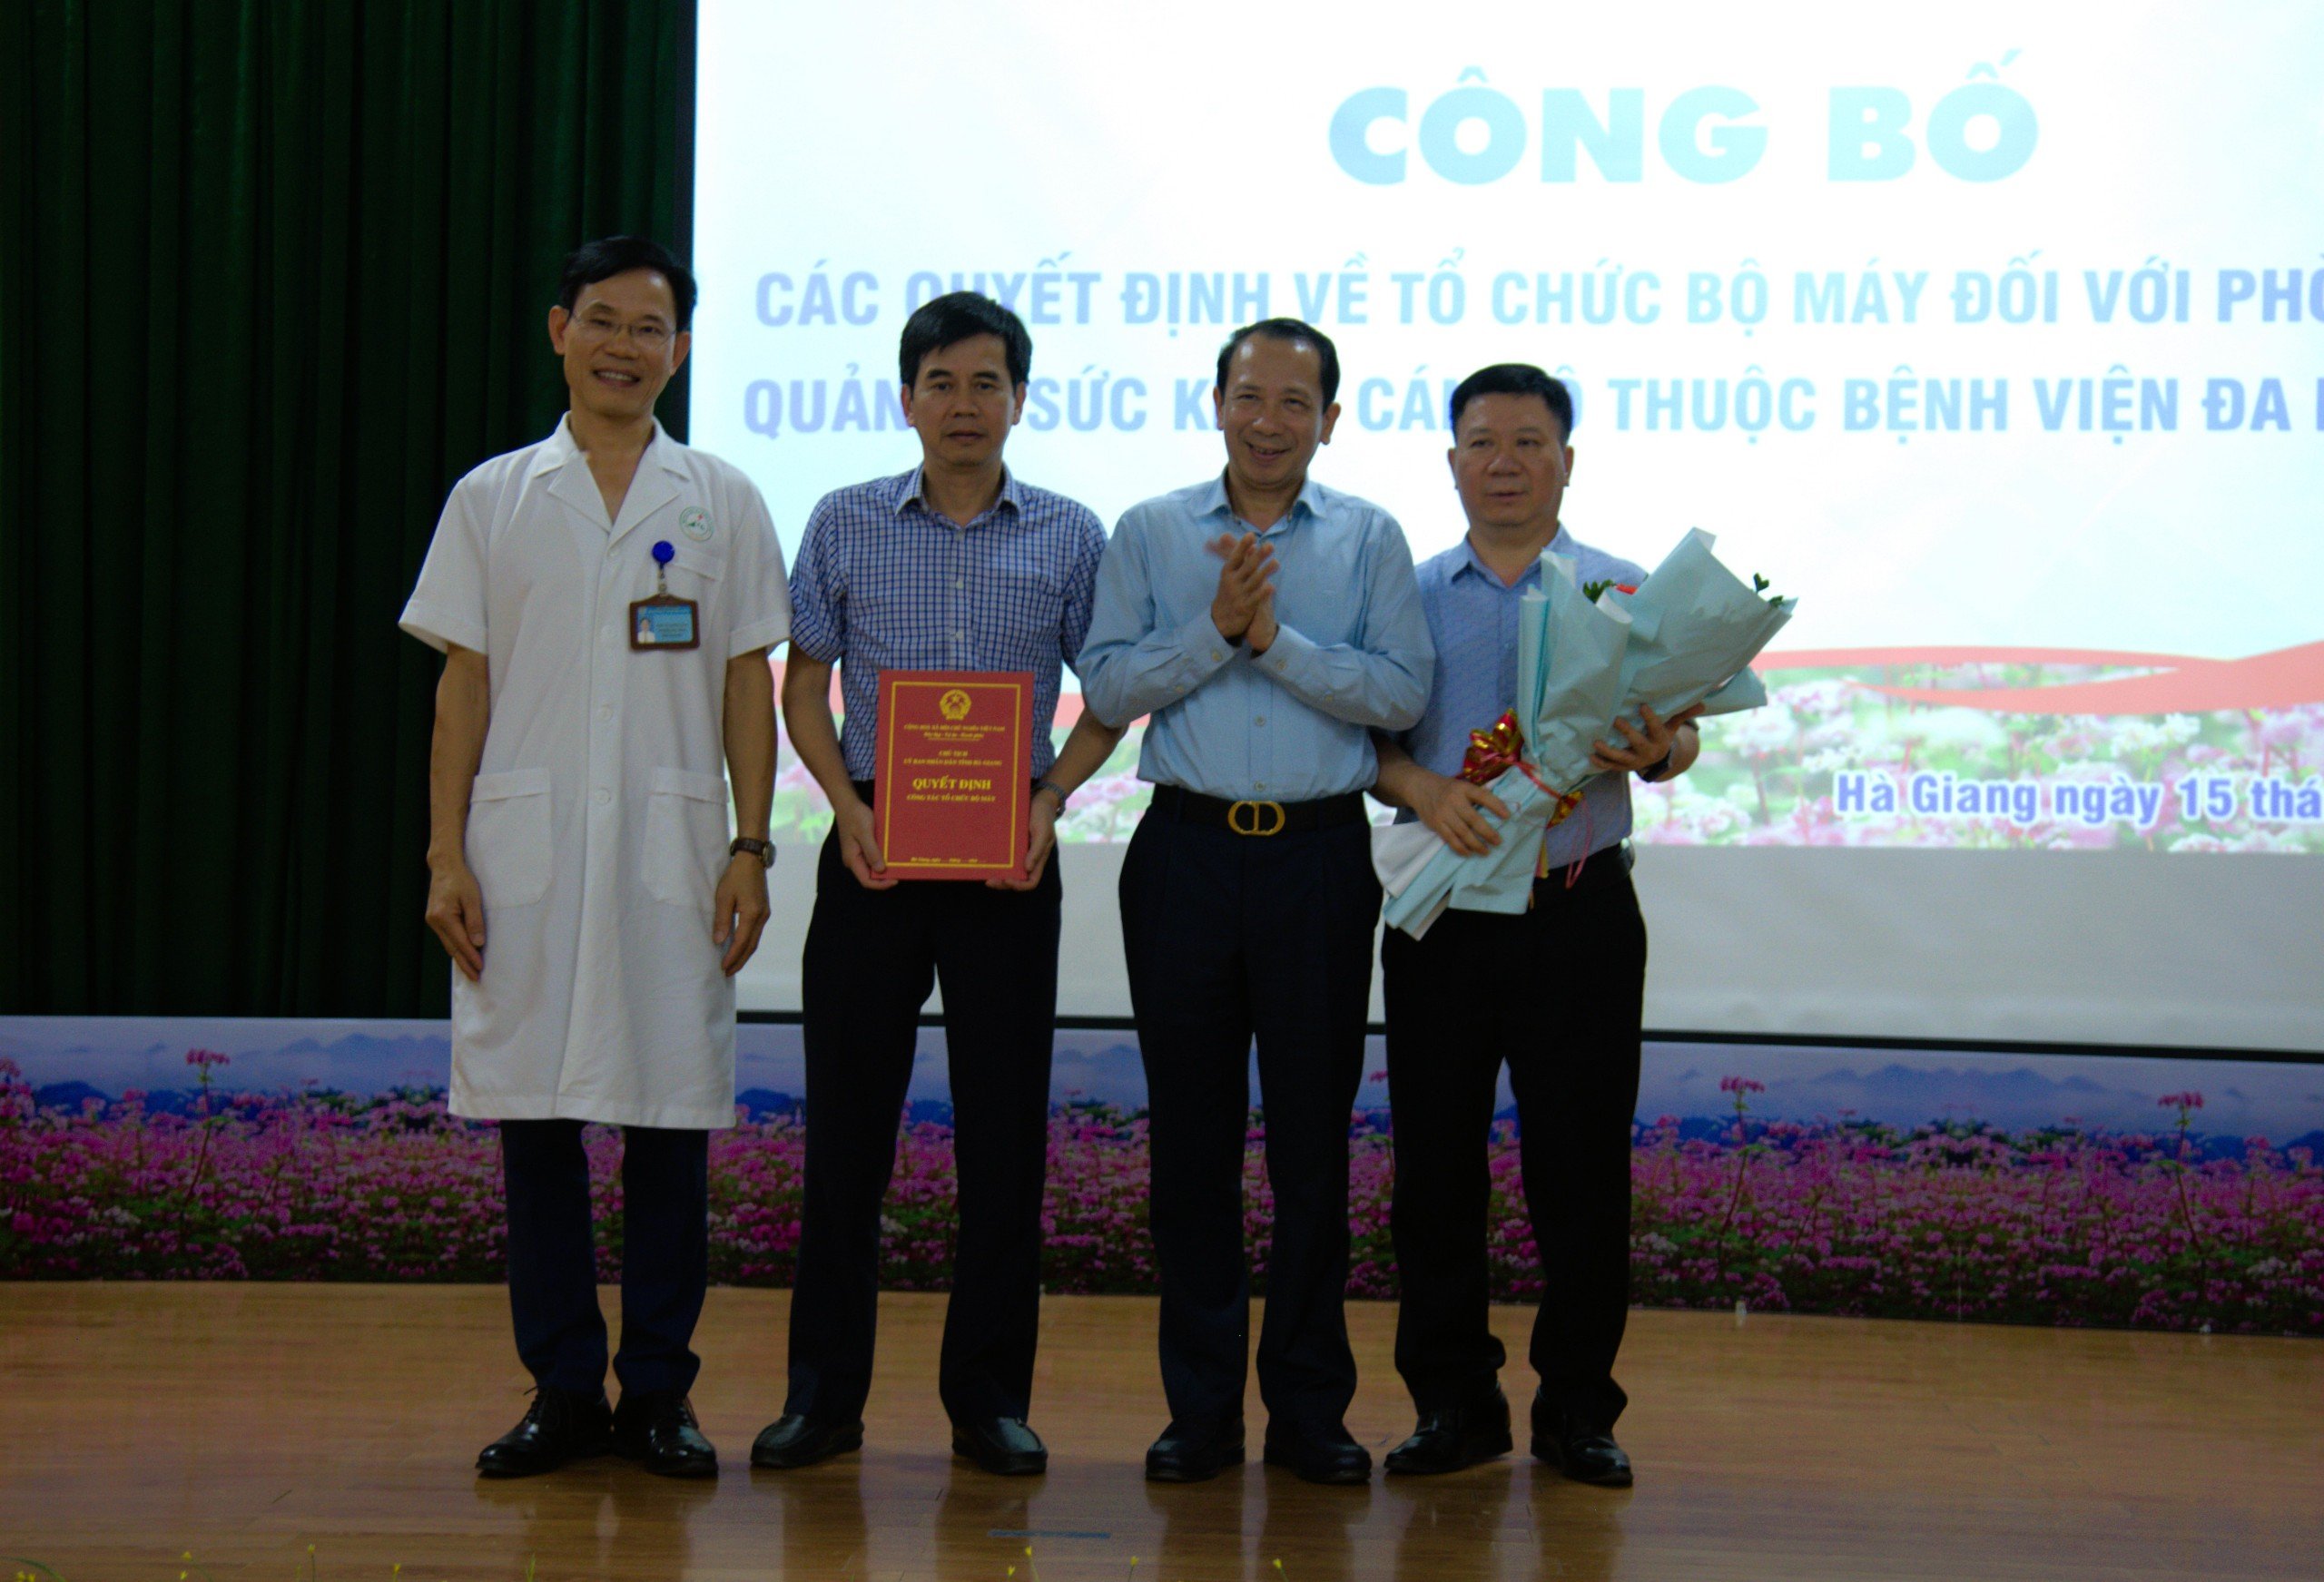 Đồng chí Trần Đức Quý, Phó Chủ tịch UBND tỉnh trao Quyết định về tổ chức bộ máy Phòng khám, quản lý sức khoẻ cán bộ trực thuộc BVĐK tỉnh